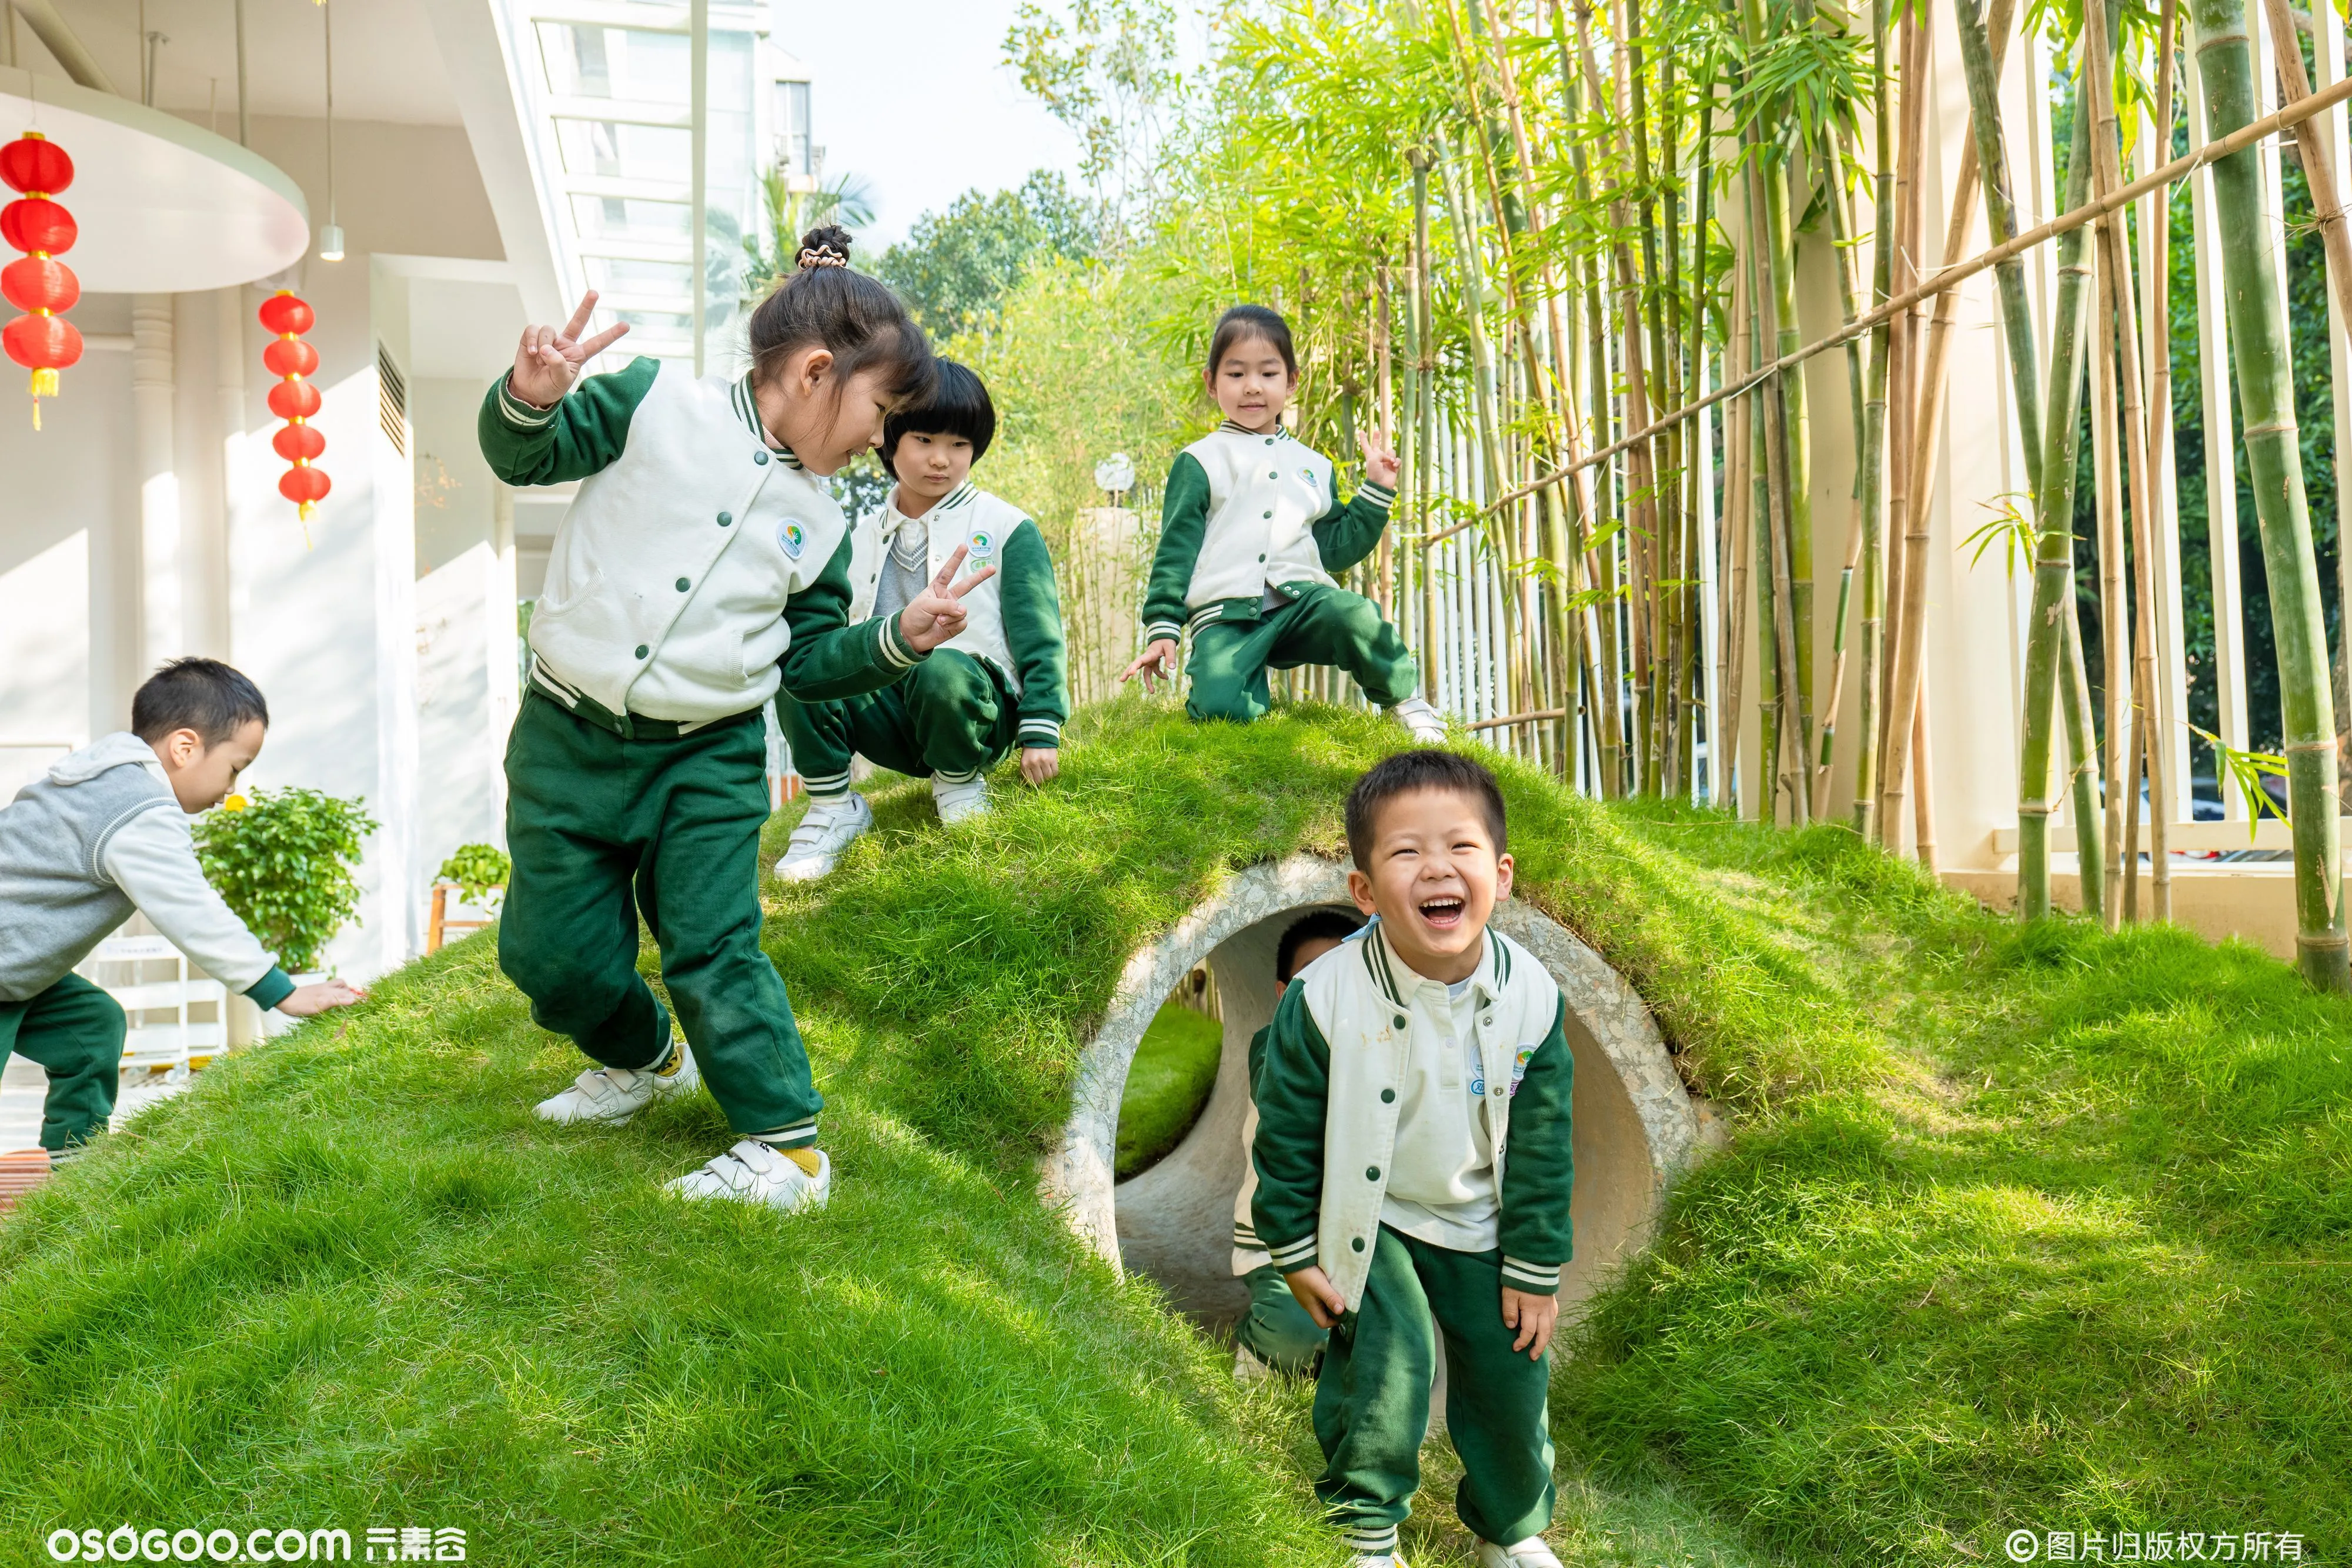 丰富多姿的户外游乐， 玩转有趣有爱的创意魔法，深圳市第五幼儿